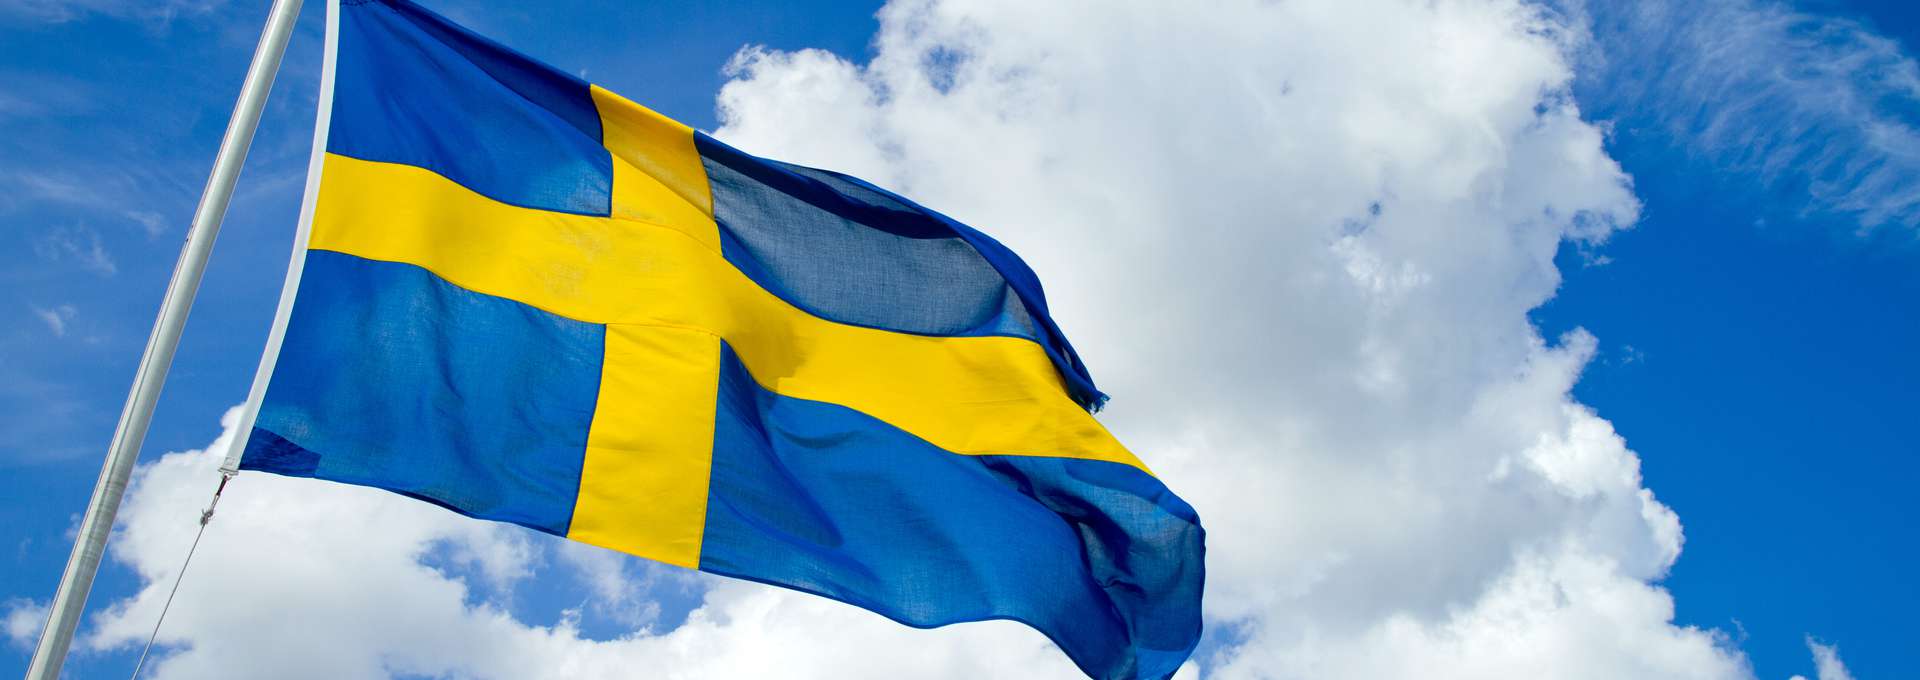 Svenska flaggan mot blå himmel.